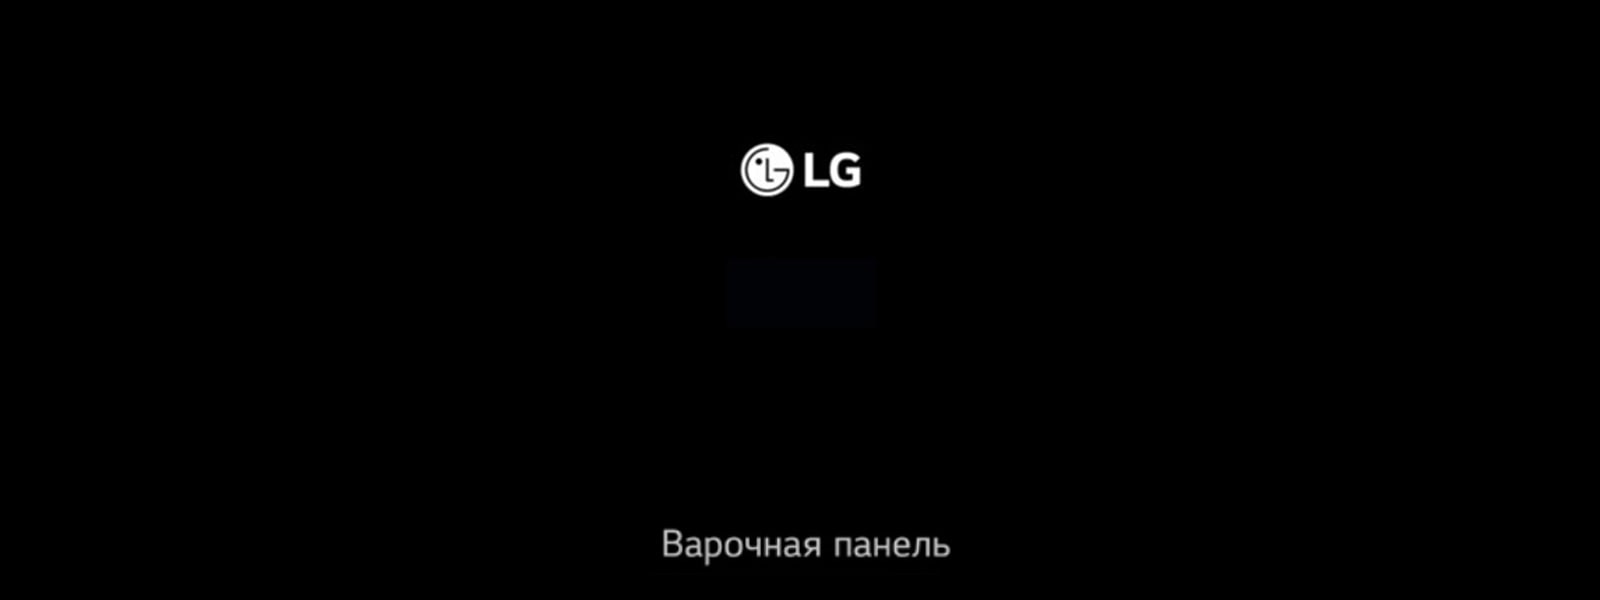 LG Встраиваемая техника - Варочная панель